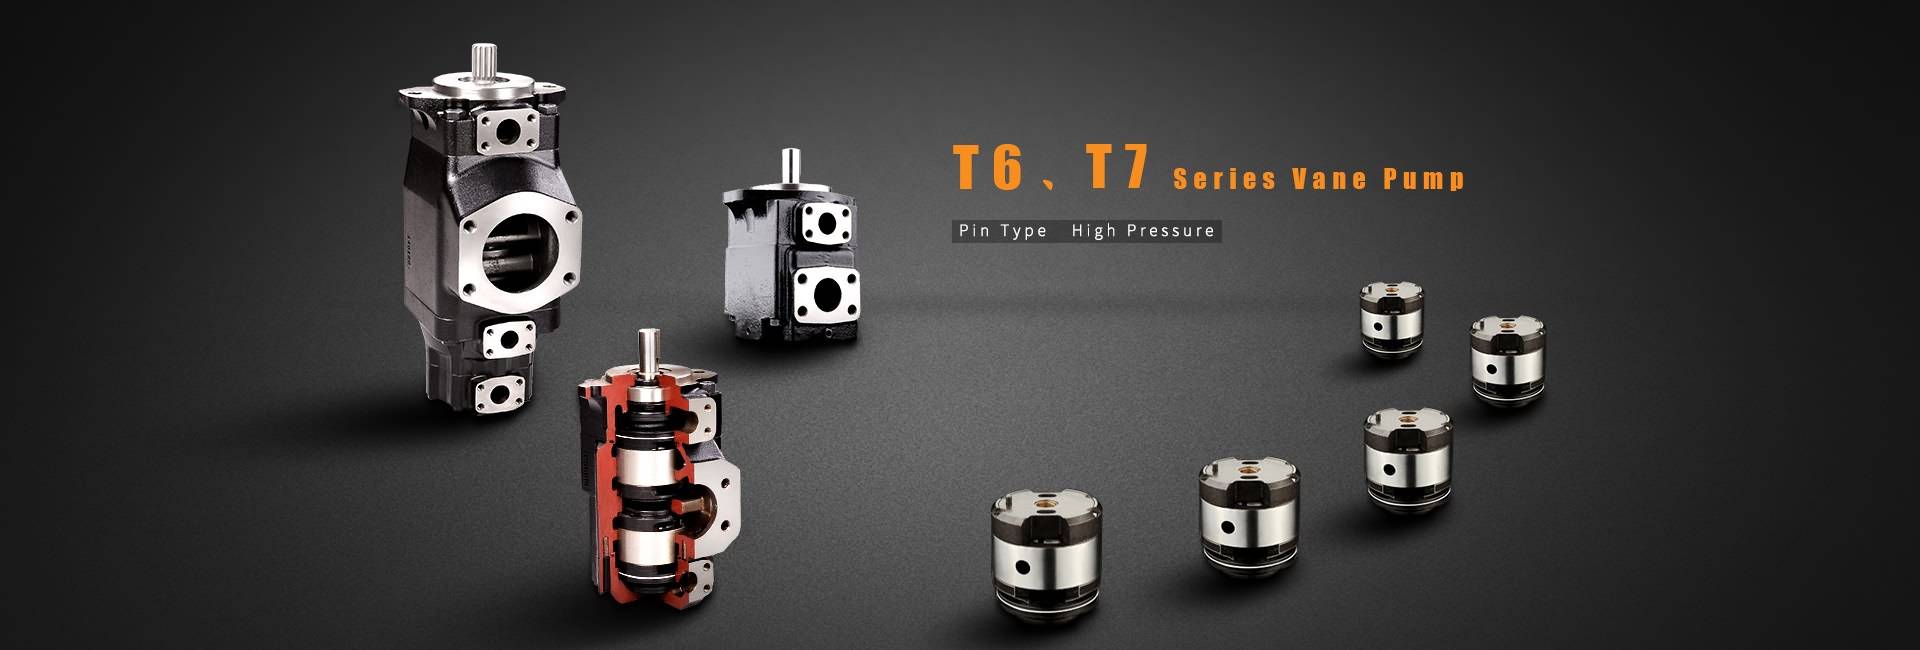 T6, T7 Series Vane di-pump